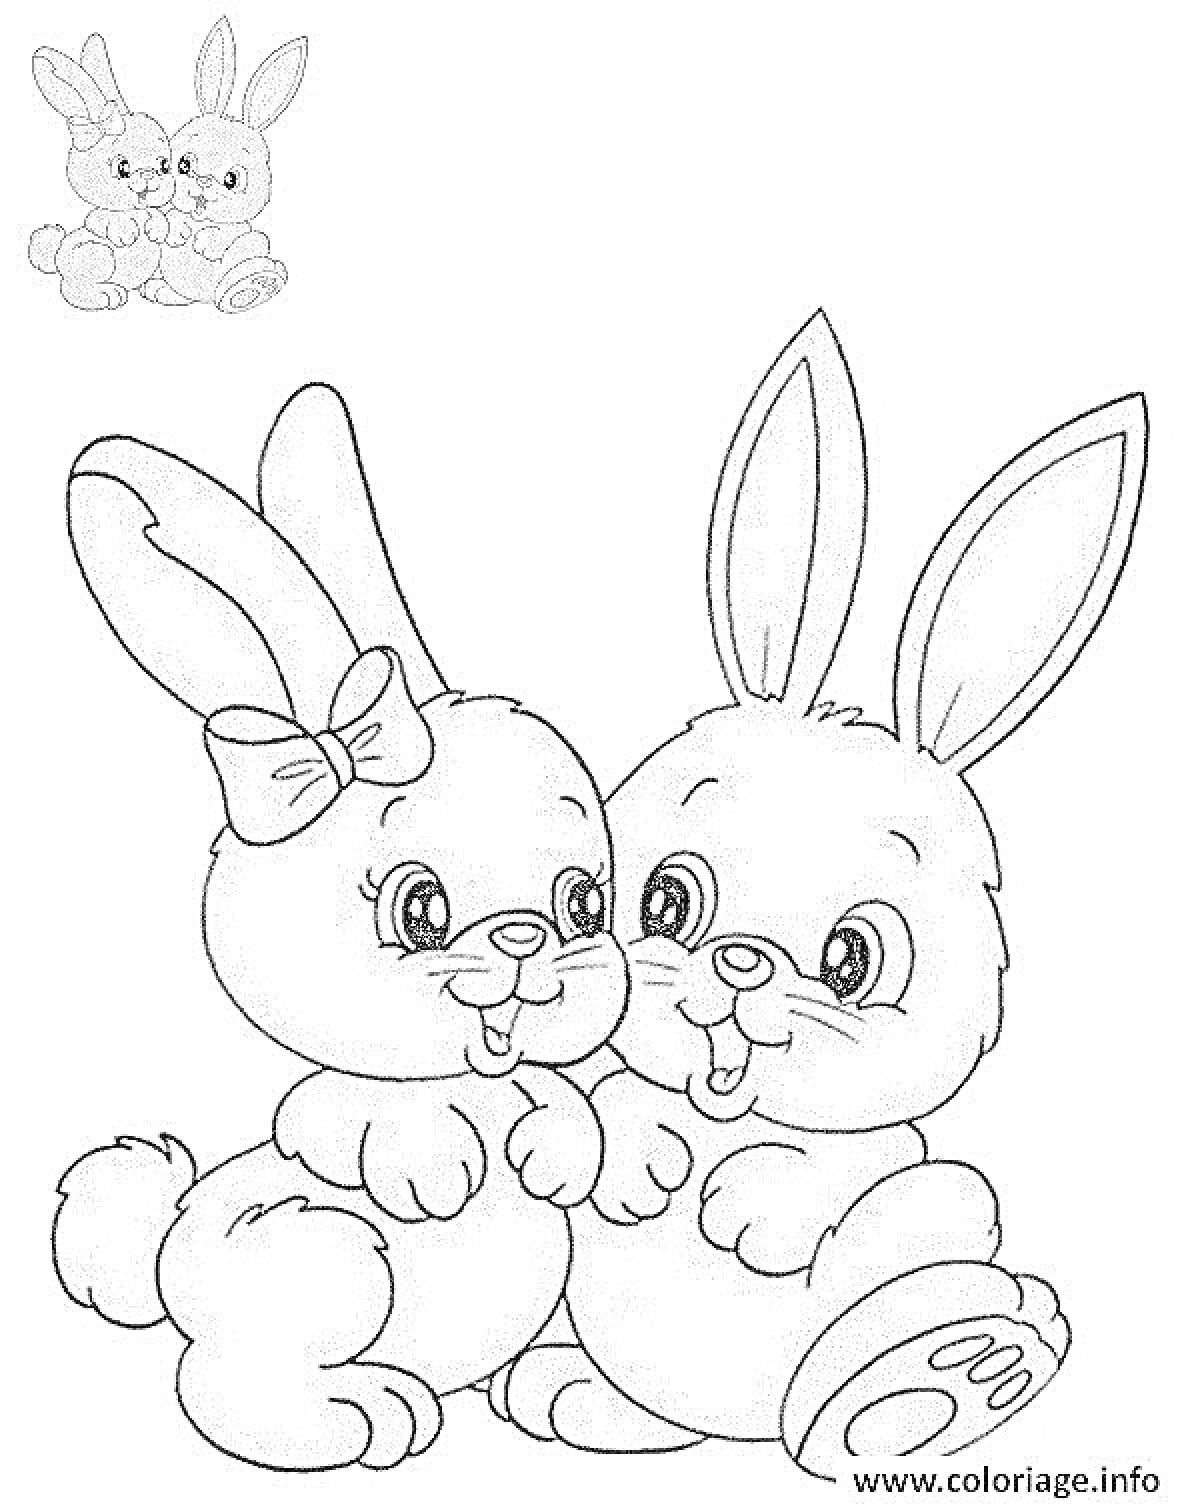 Раскраска Два зайчика с сердечком, зайка-девочка с бантиком и зайка-мальчик